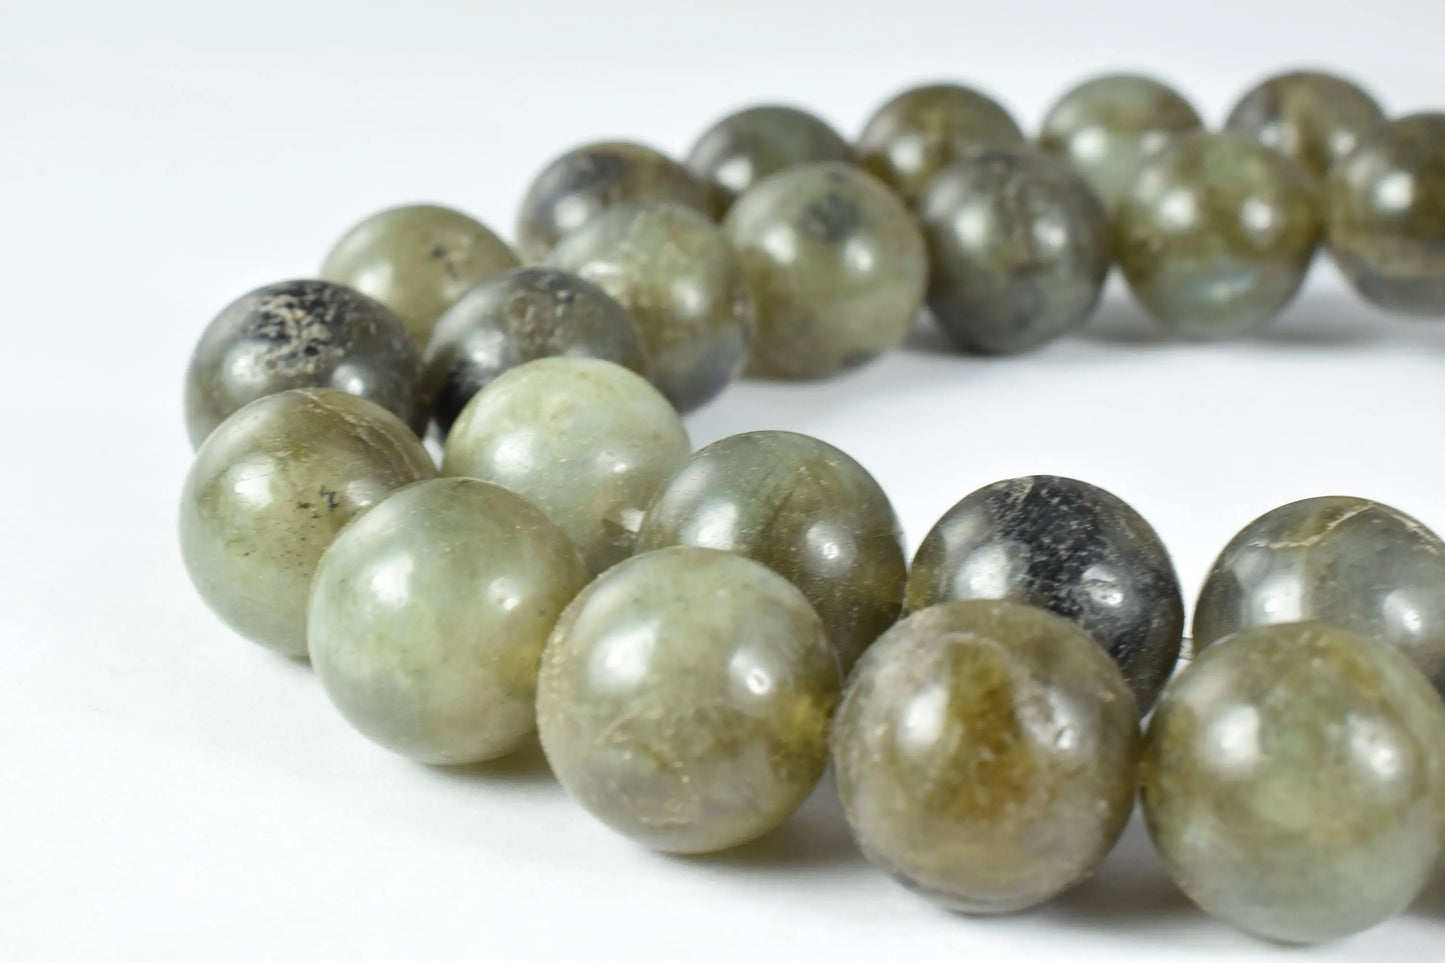 3mm/4mm/13mm Green Labrodorite Round Gemstone Beads,Ball Beads, Round Beads, Jewelry Making, Beading Supplies,natural stone,healing,chakra - BeadsFindingDepot